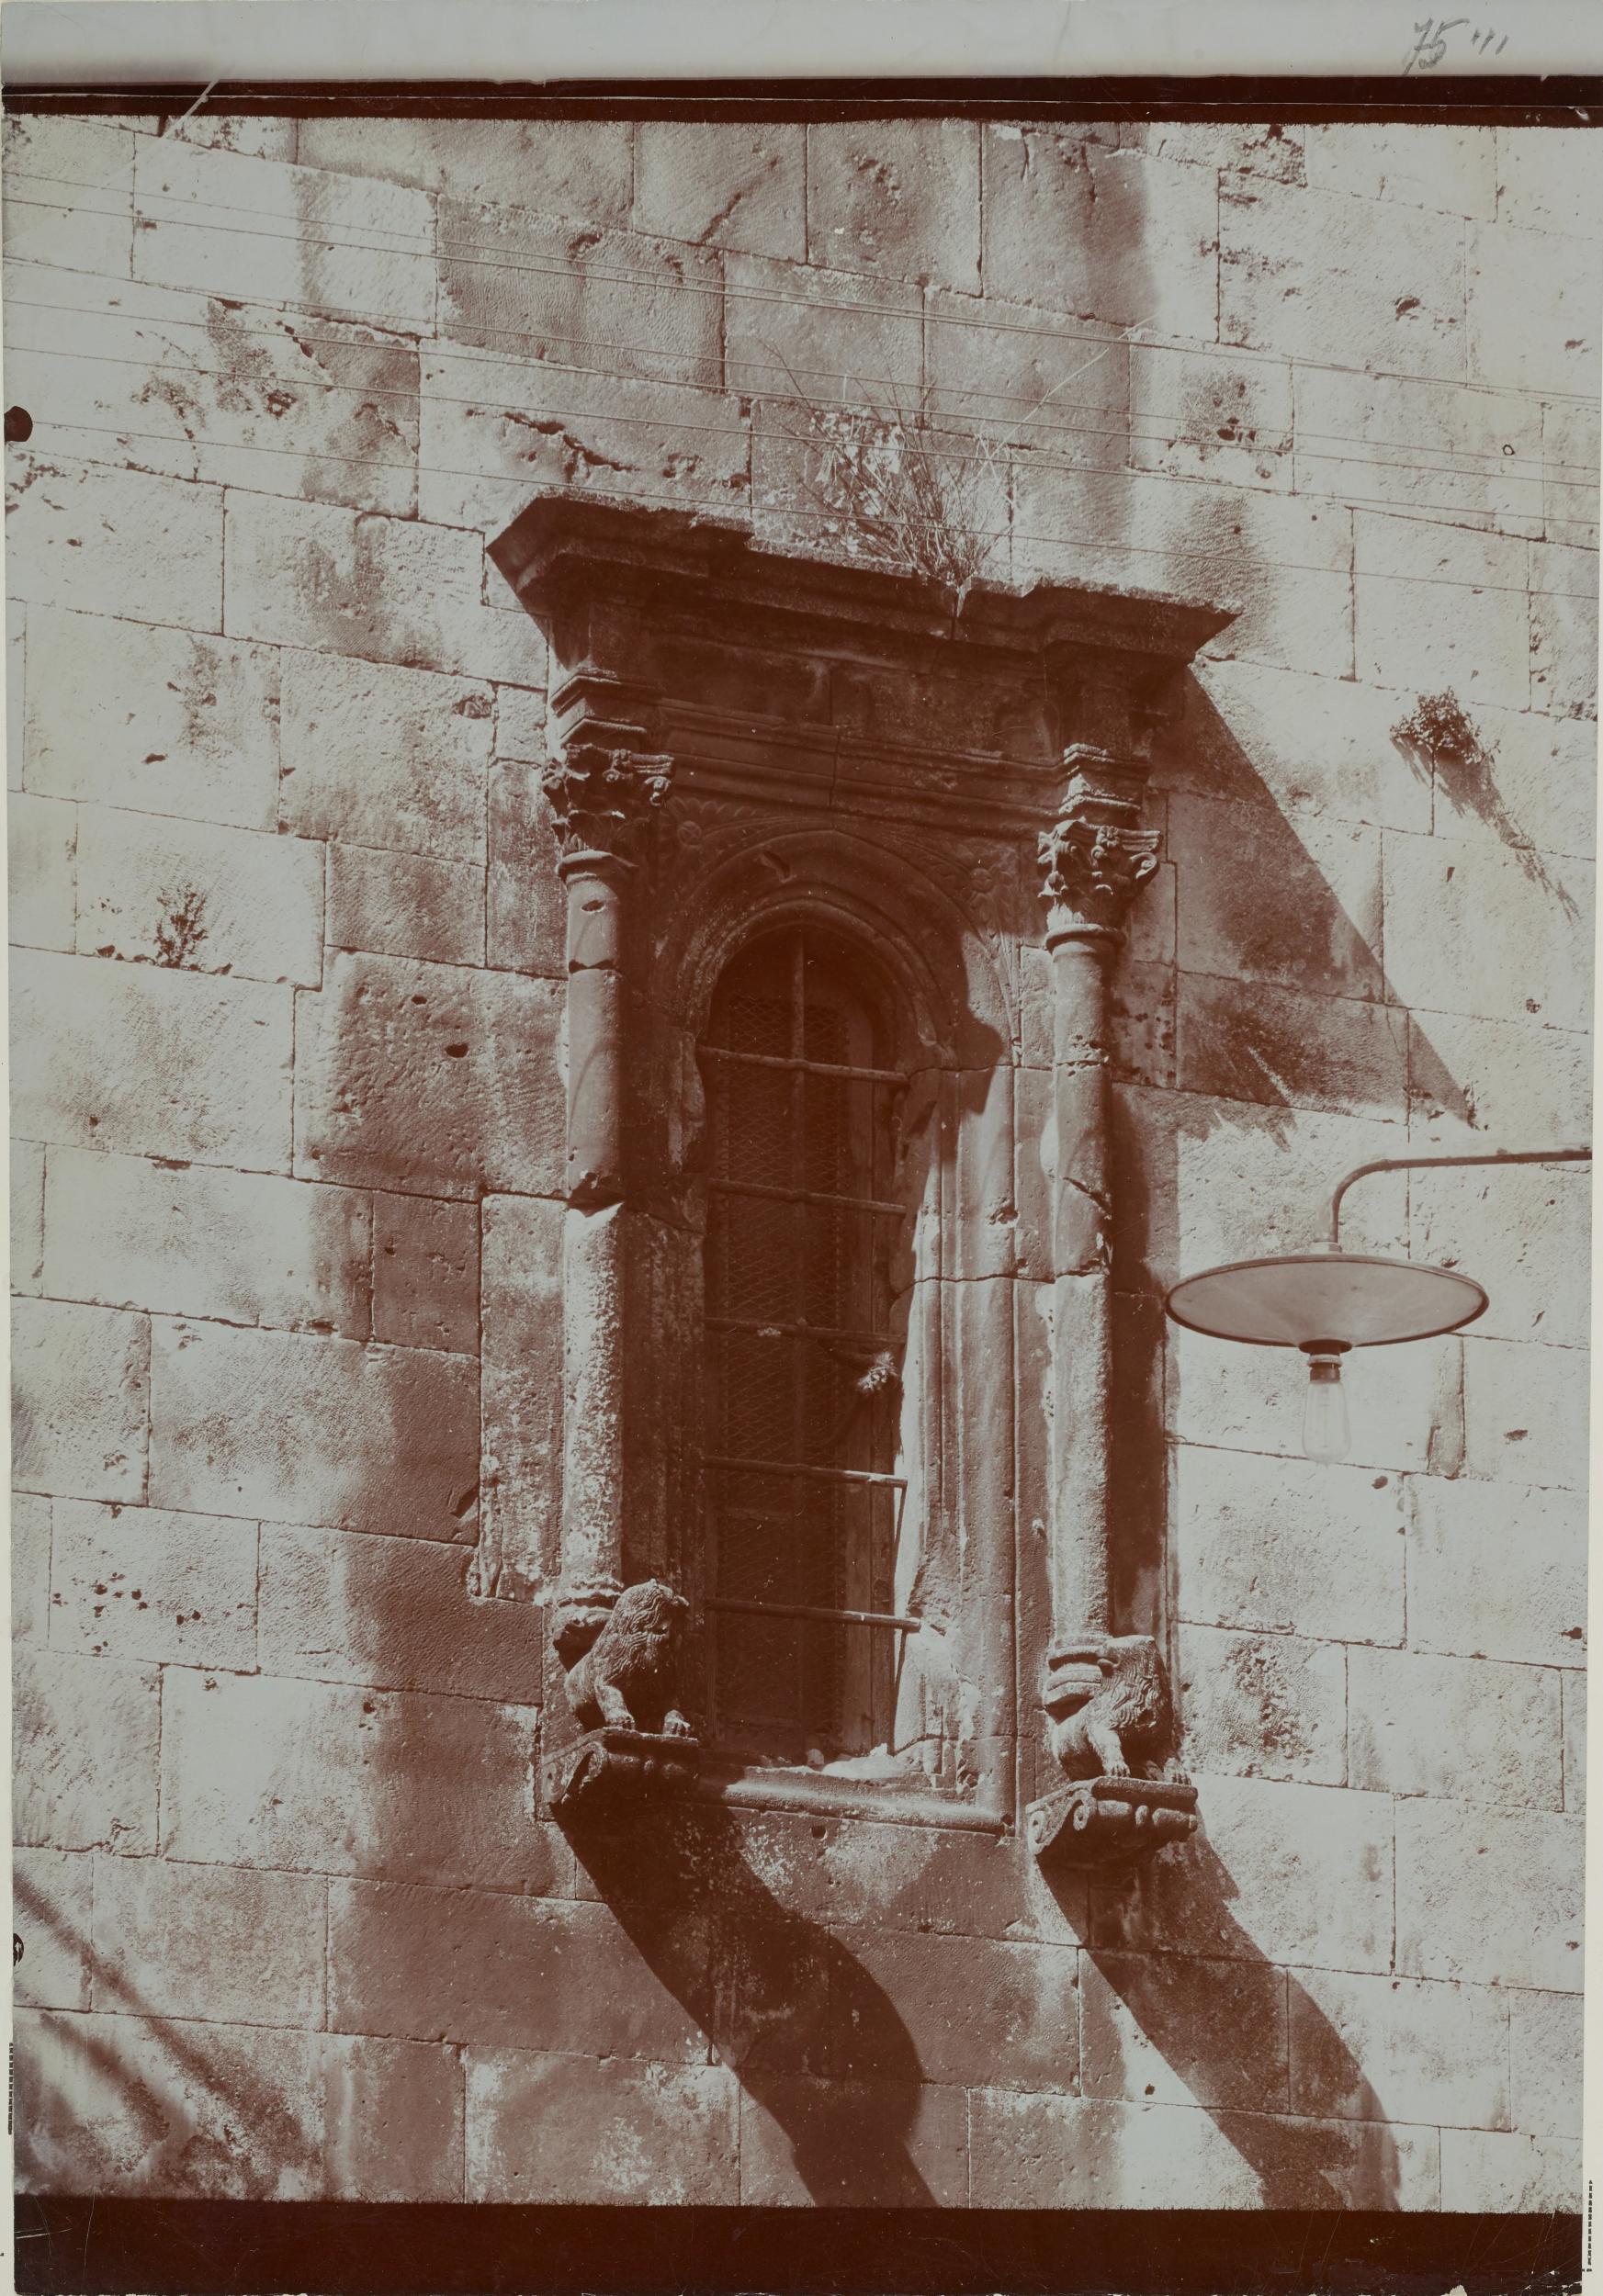 Fotografo non identificato, Acquaviva delle Fonti - Cattedrale, monofora del campanile, 1901-1925, gelatina ai sali d'argento/carta, MPI130127